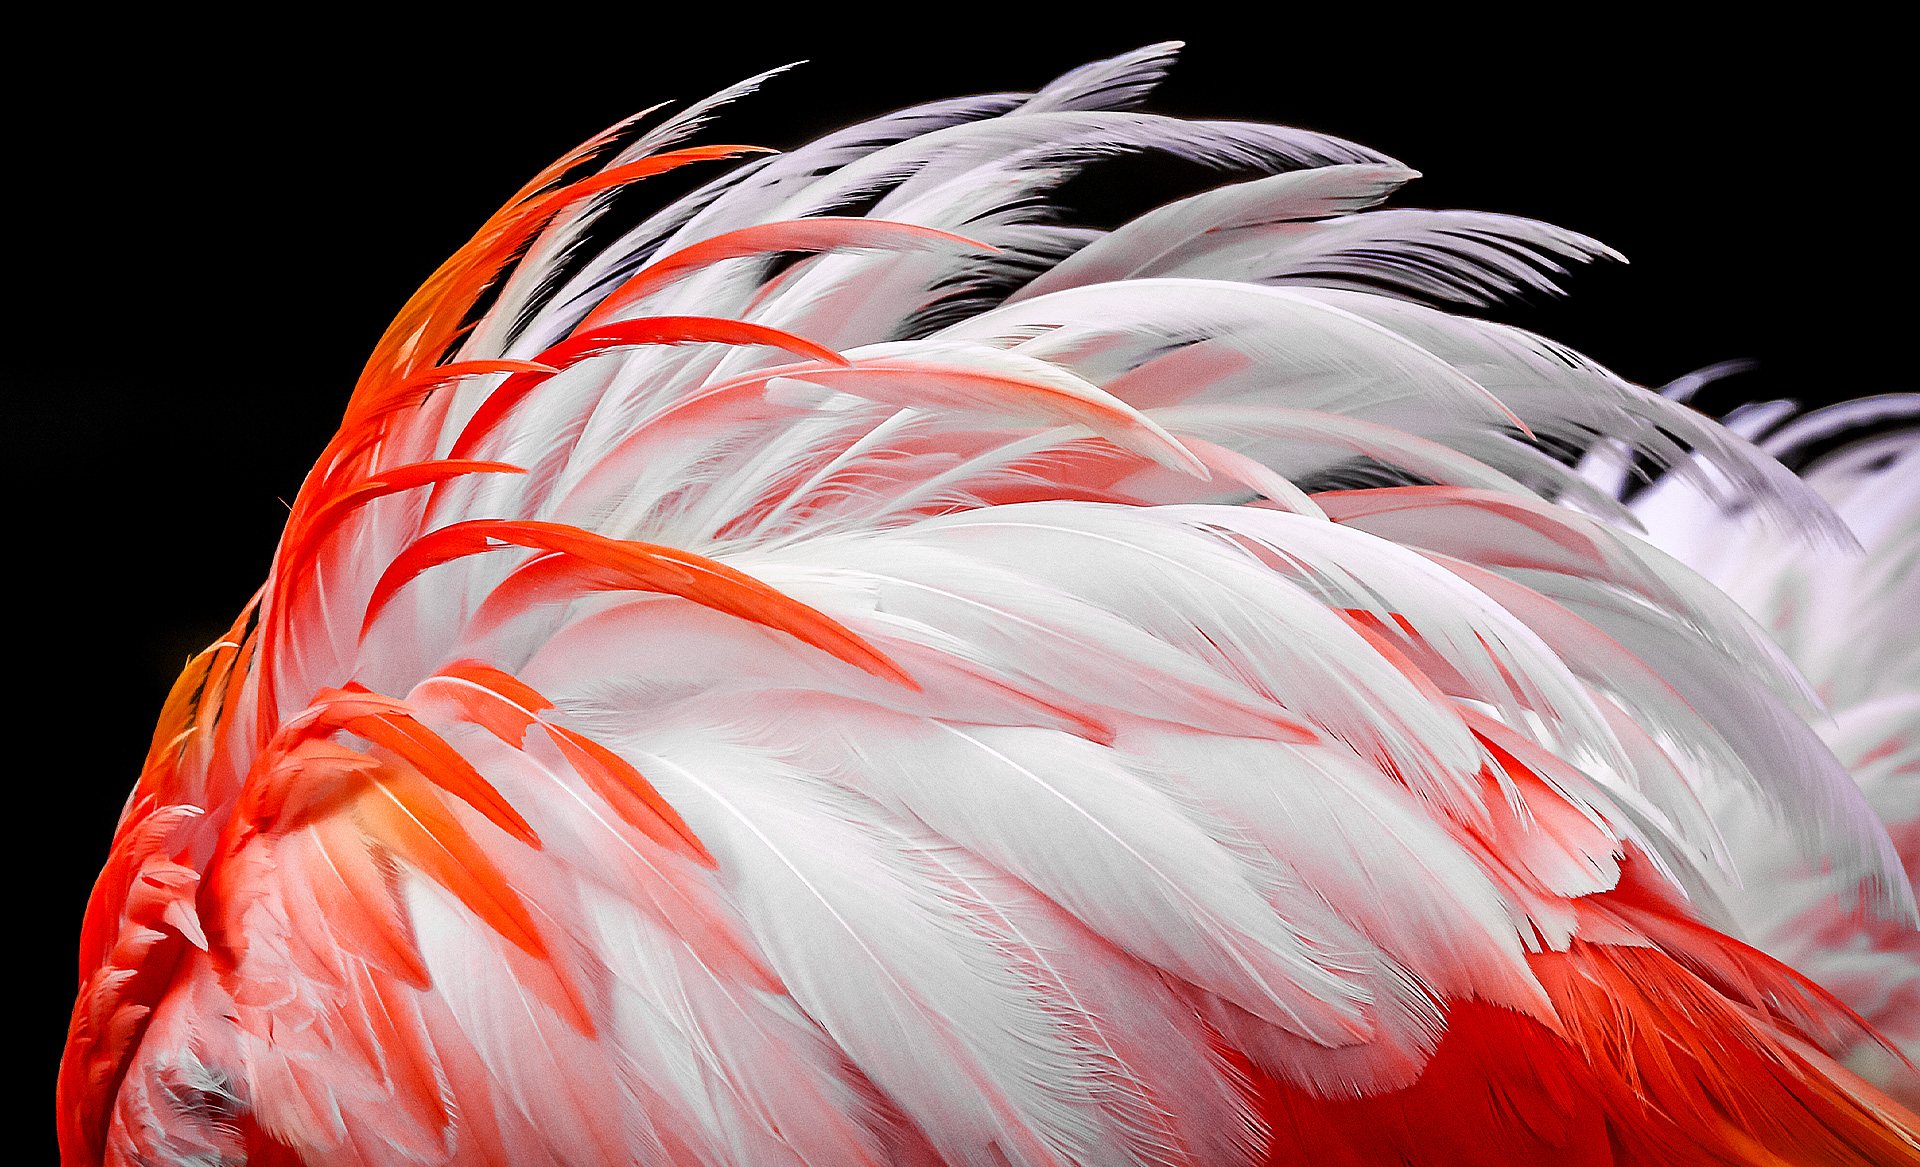 На экране появляется тусклое изображение белых и оранжевых перьев фламинго. Яркость изображения увеличивается постепенно на 8%, 13%, 20%, 23%, 26% и, наконец, 30%.